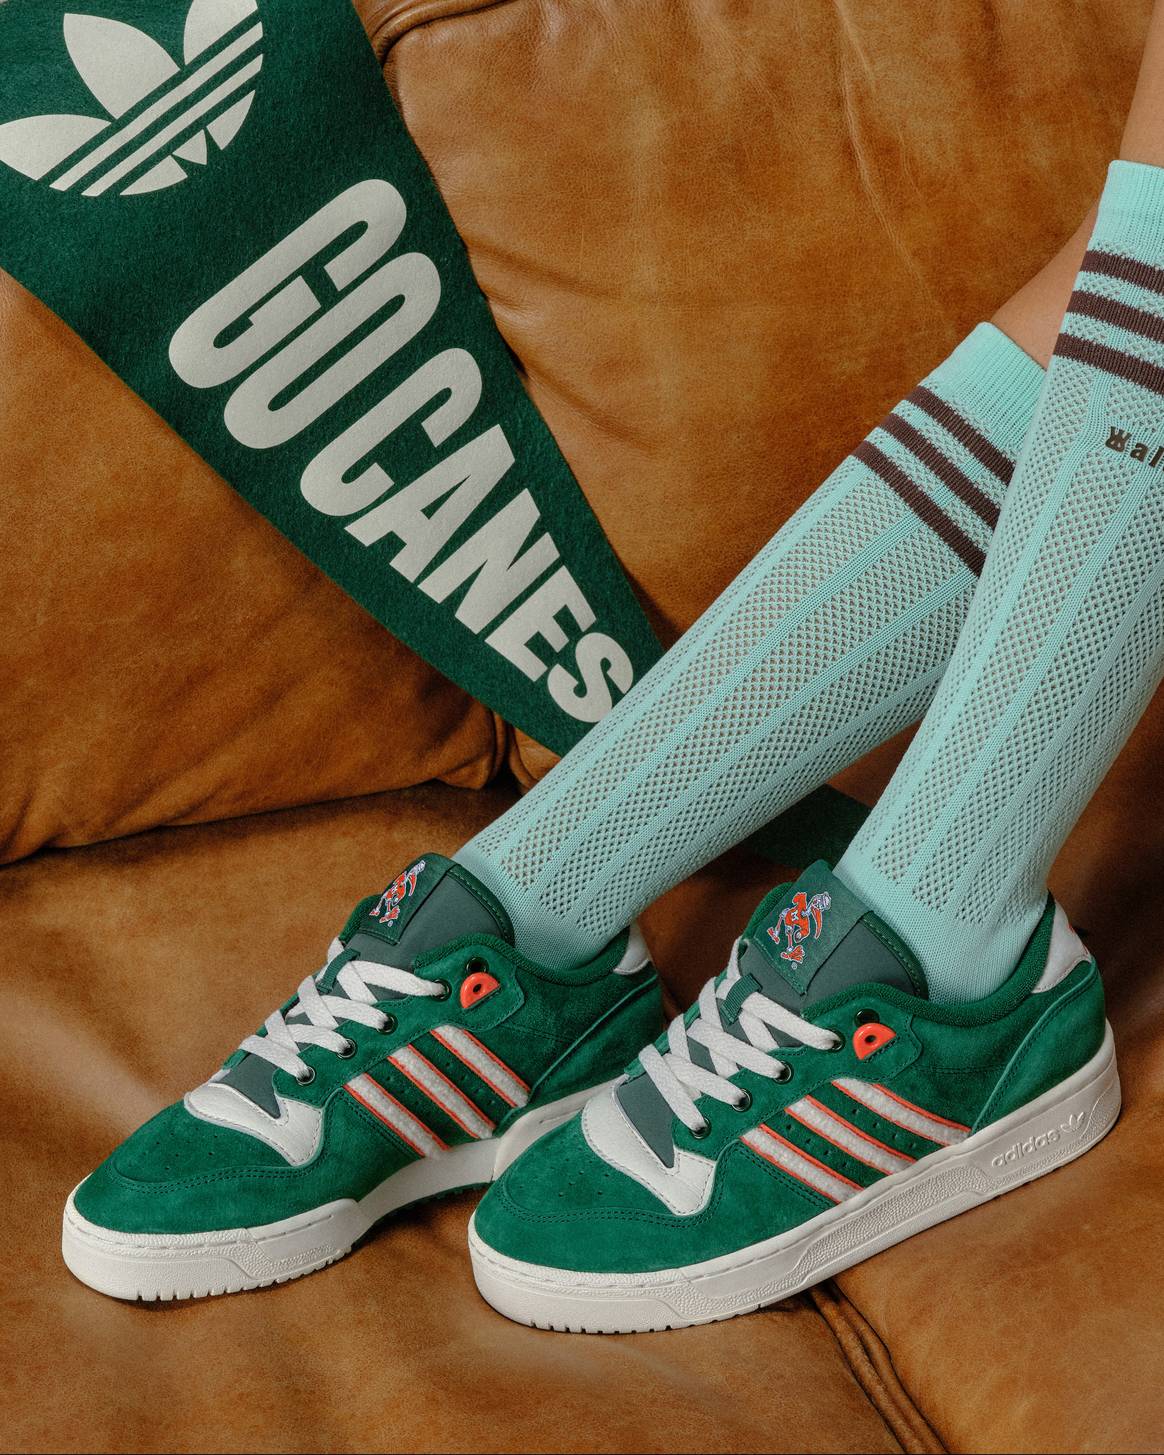 Adidas Originals ‘Rivalry’ collection